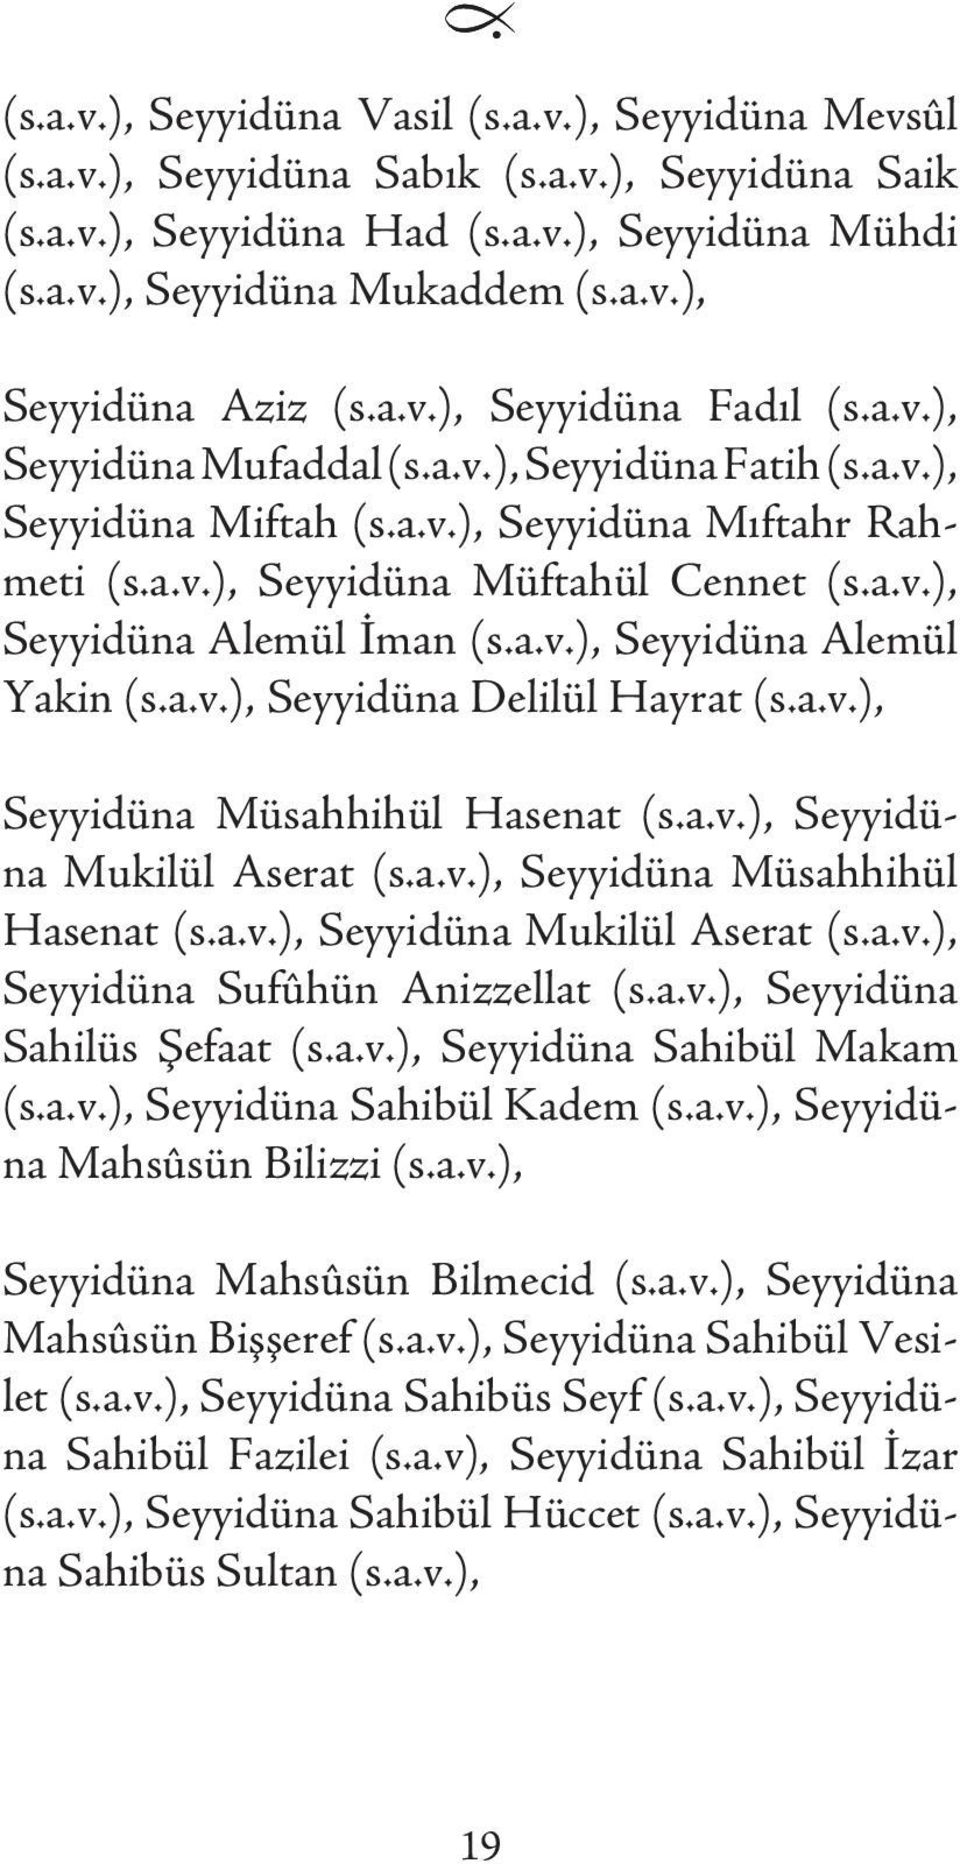 a.v.), Seyyidüna Alemül Yakin (s.a.v.), Seyyidüna Delilül Hayrat (s.a.v.), Seyyidüna Müsahhihül Hasenat (s.a.v.), Seyyidüna Mukilül Aserat (s.a.v.), Seyyidüna Müsahhihül Hasenat (s.a.v.), Seyyidüna Mukilül Aserat (s.a.v.), Seyyidüna Sufûhün Anizzellat (s.